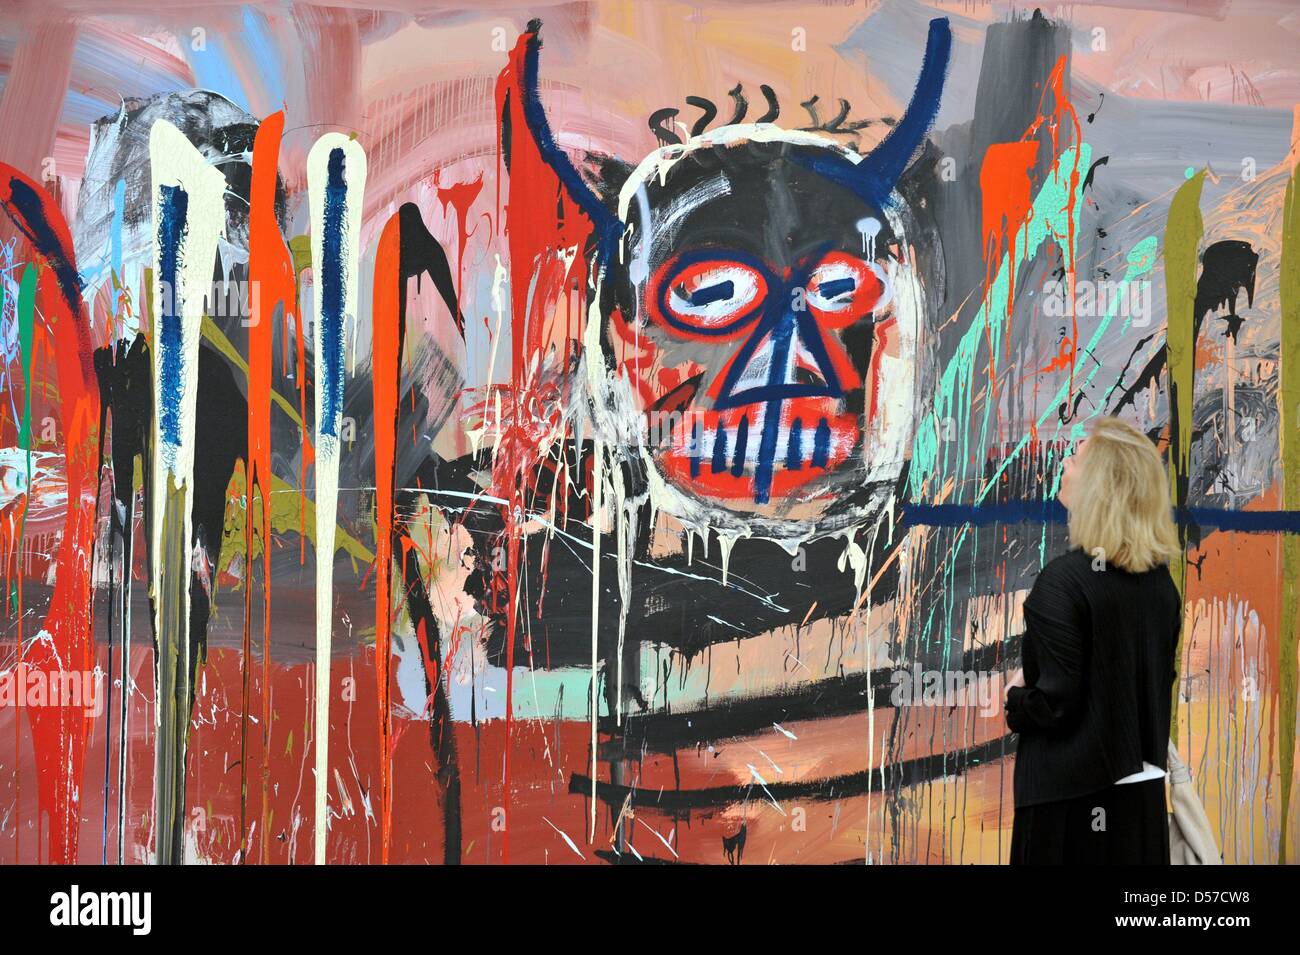 Ein Besucher der Press Preview der Ausstellung '' Basquiat'' schaut das Gemälde "Untitled" (Teufel, 1982) im Museum der Fondation Beyeler in Riehen bei Basel, Schweiz, 7. Mai 2010. Auf der Occaision des 50. Geburtstages des 1988 verstorbenen Künstlers Jean-Michel Basquiet, die Fondation Beyeler widmet eine große Retrospektive mit über 100 Gemälde, Papierarbeiten und Objekte, die Stockfoto